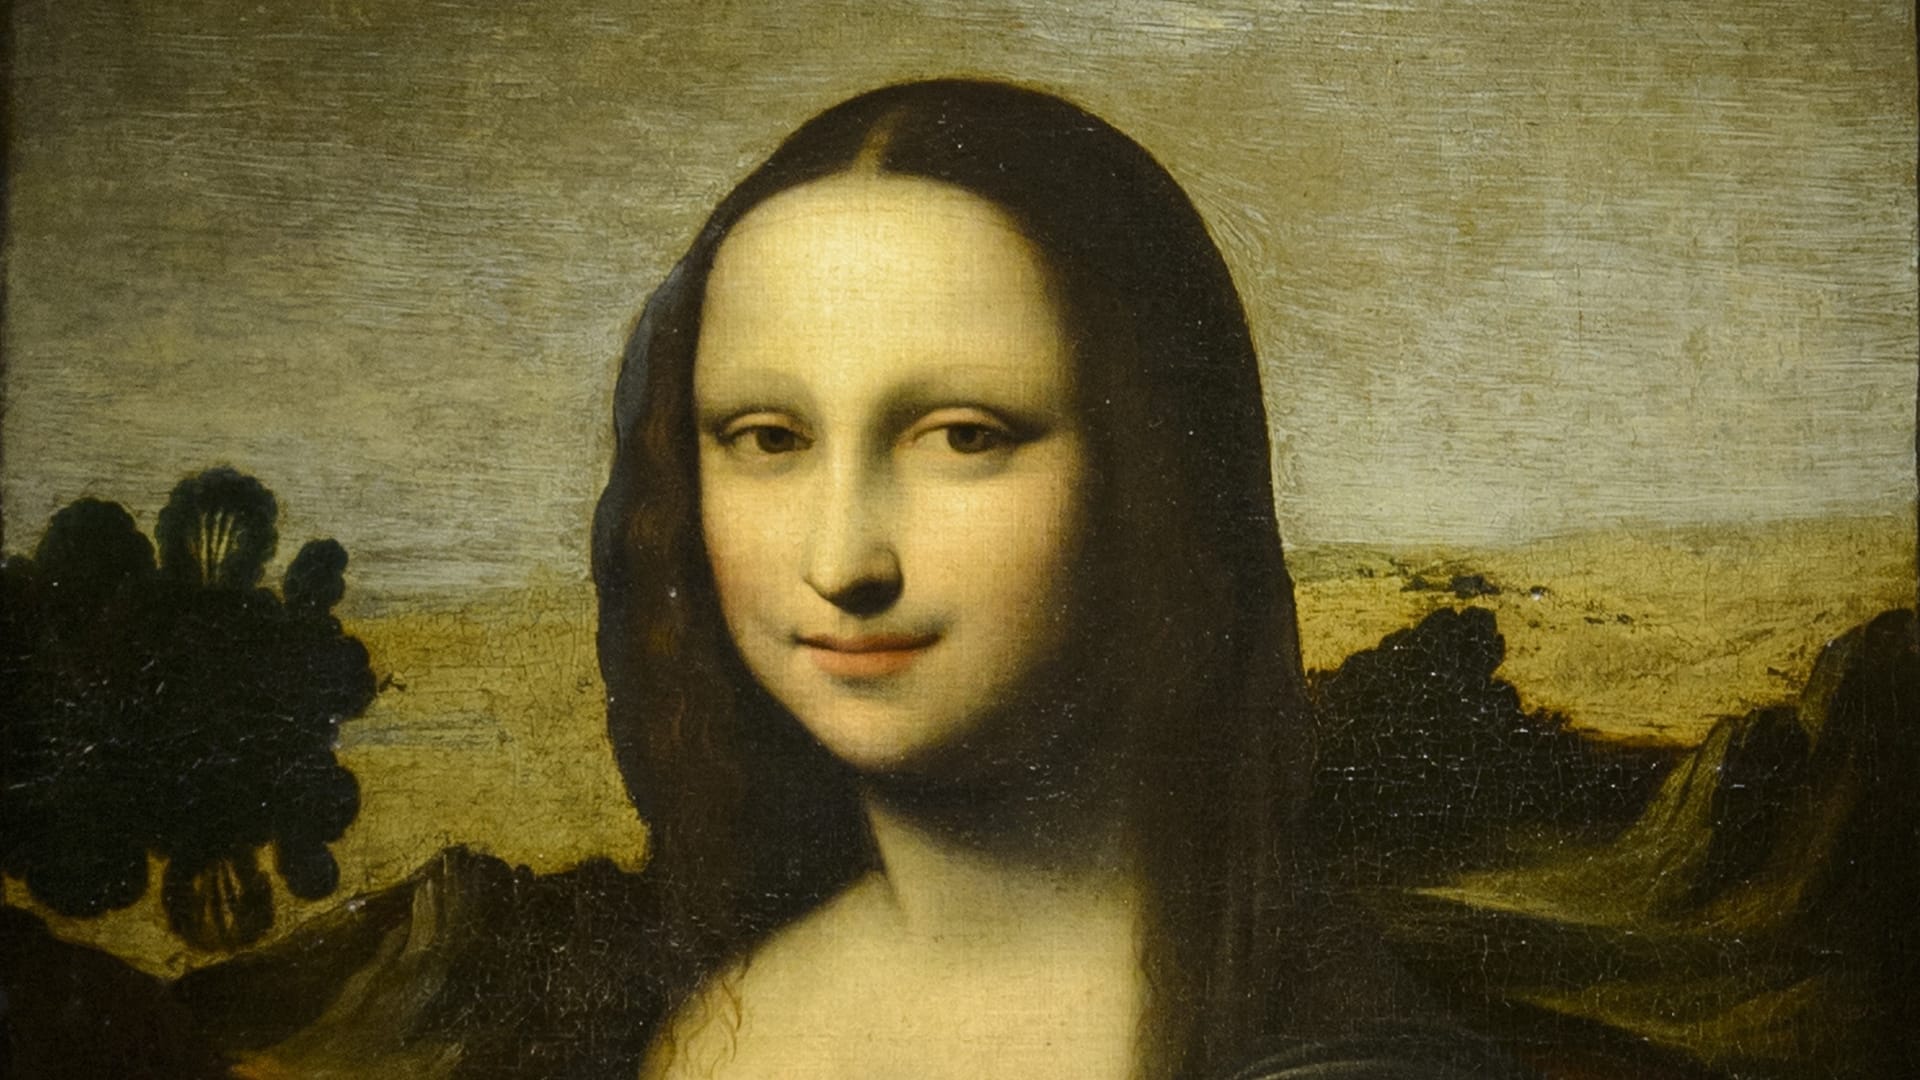 بعد إخفائها لعقود.. "نسخة سابقة" مثيرة للجدل للوحة موناليزا الشهيرة